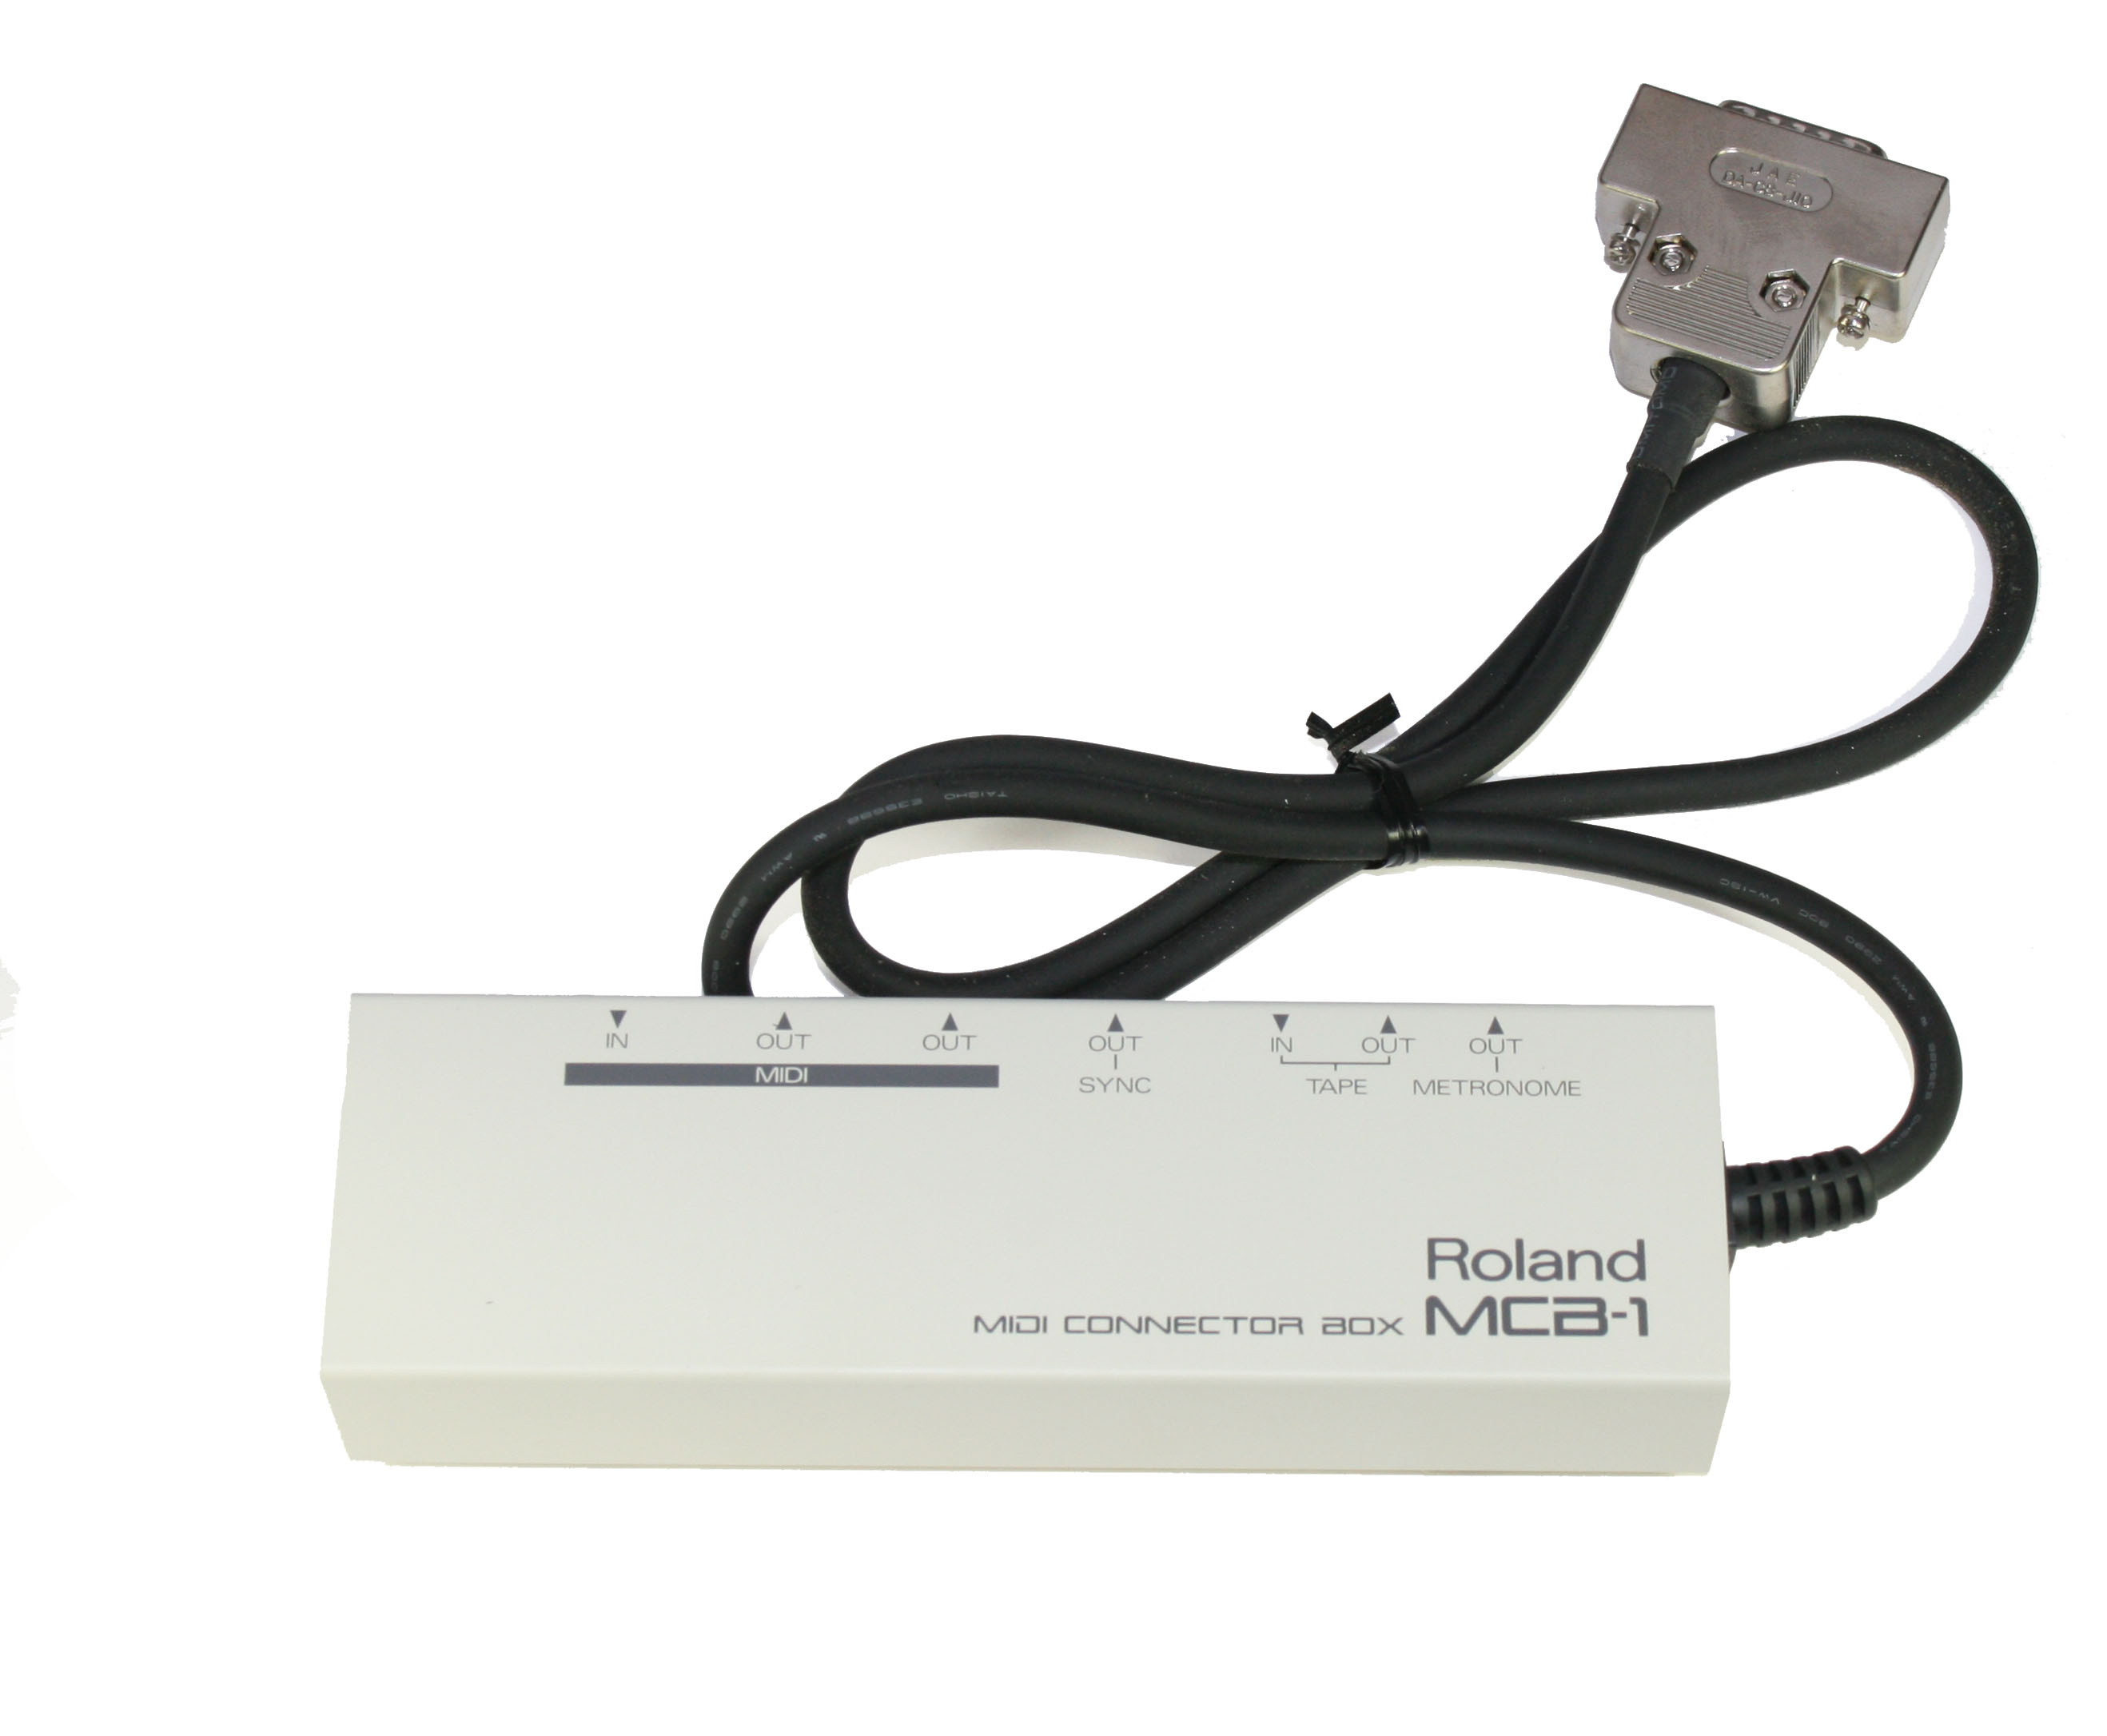 Roland MCB-1 MIDI Connector Box